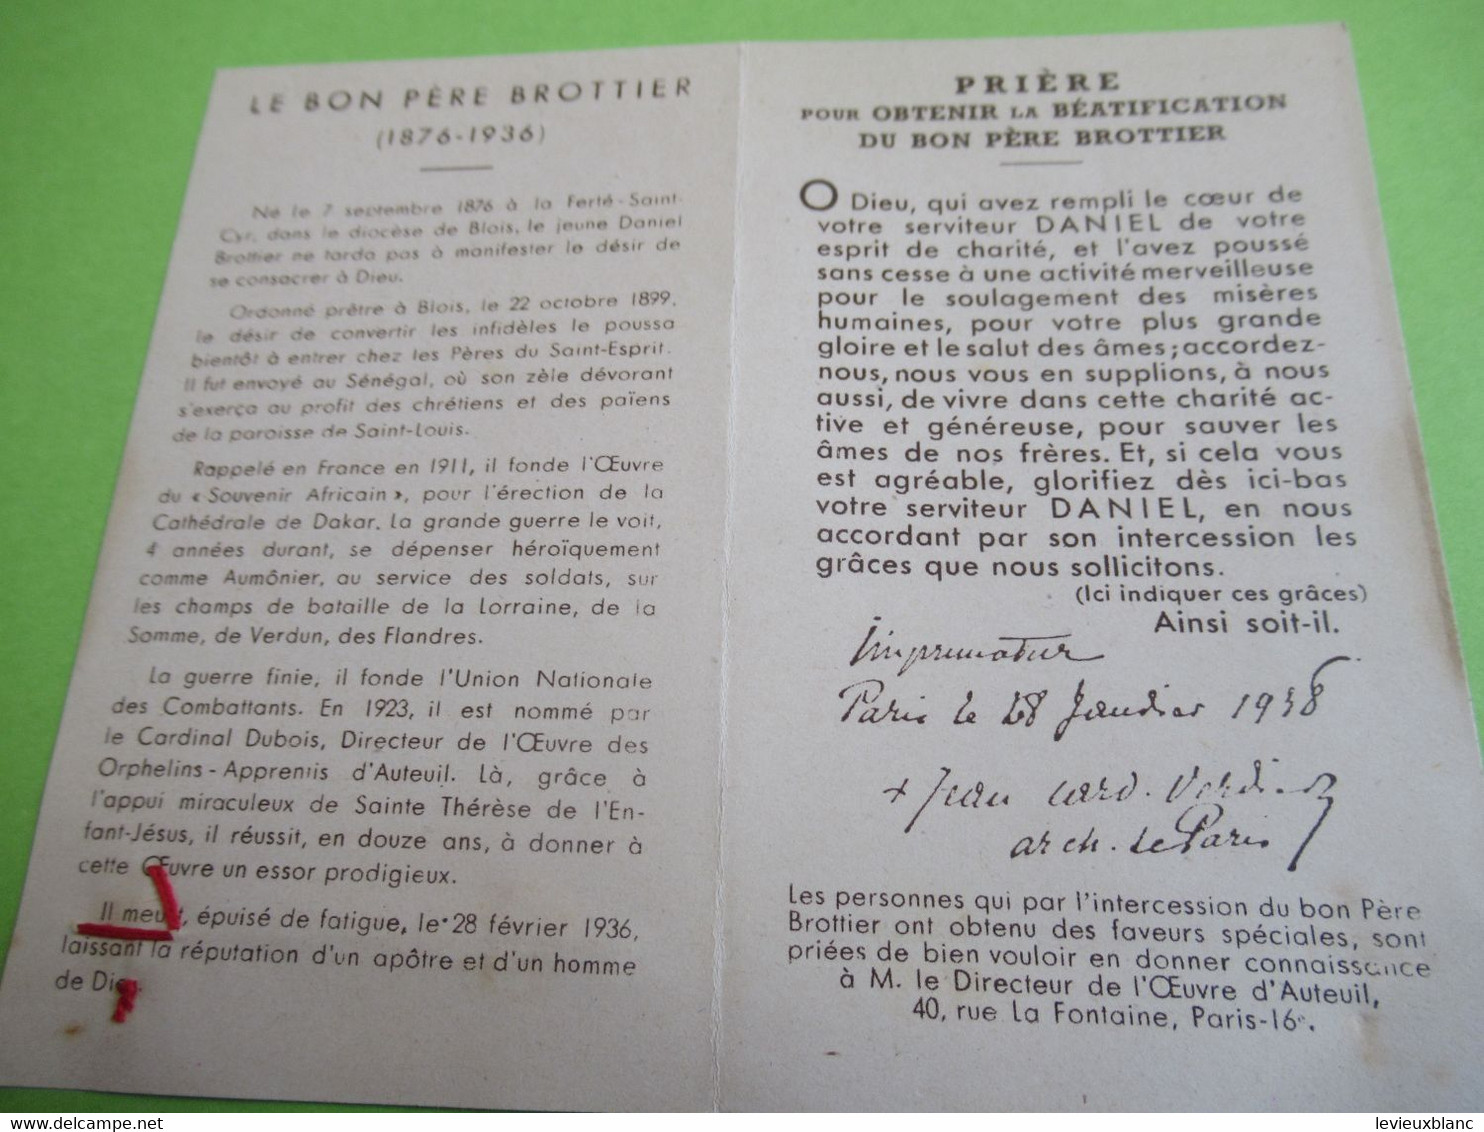 Image Pieuse Ancienne/Le Pére Daniet Brottier/Etoffe Ayant Touché/Cardinal Verdier Archevêque De Paris/1938   IMPI106a - Religion & Esotérisme